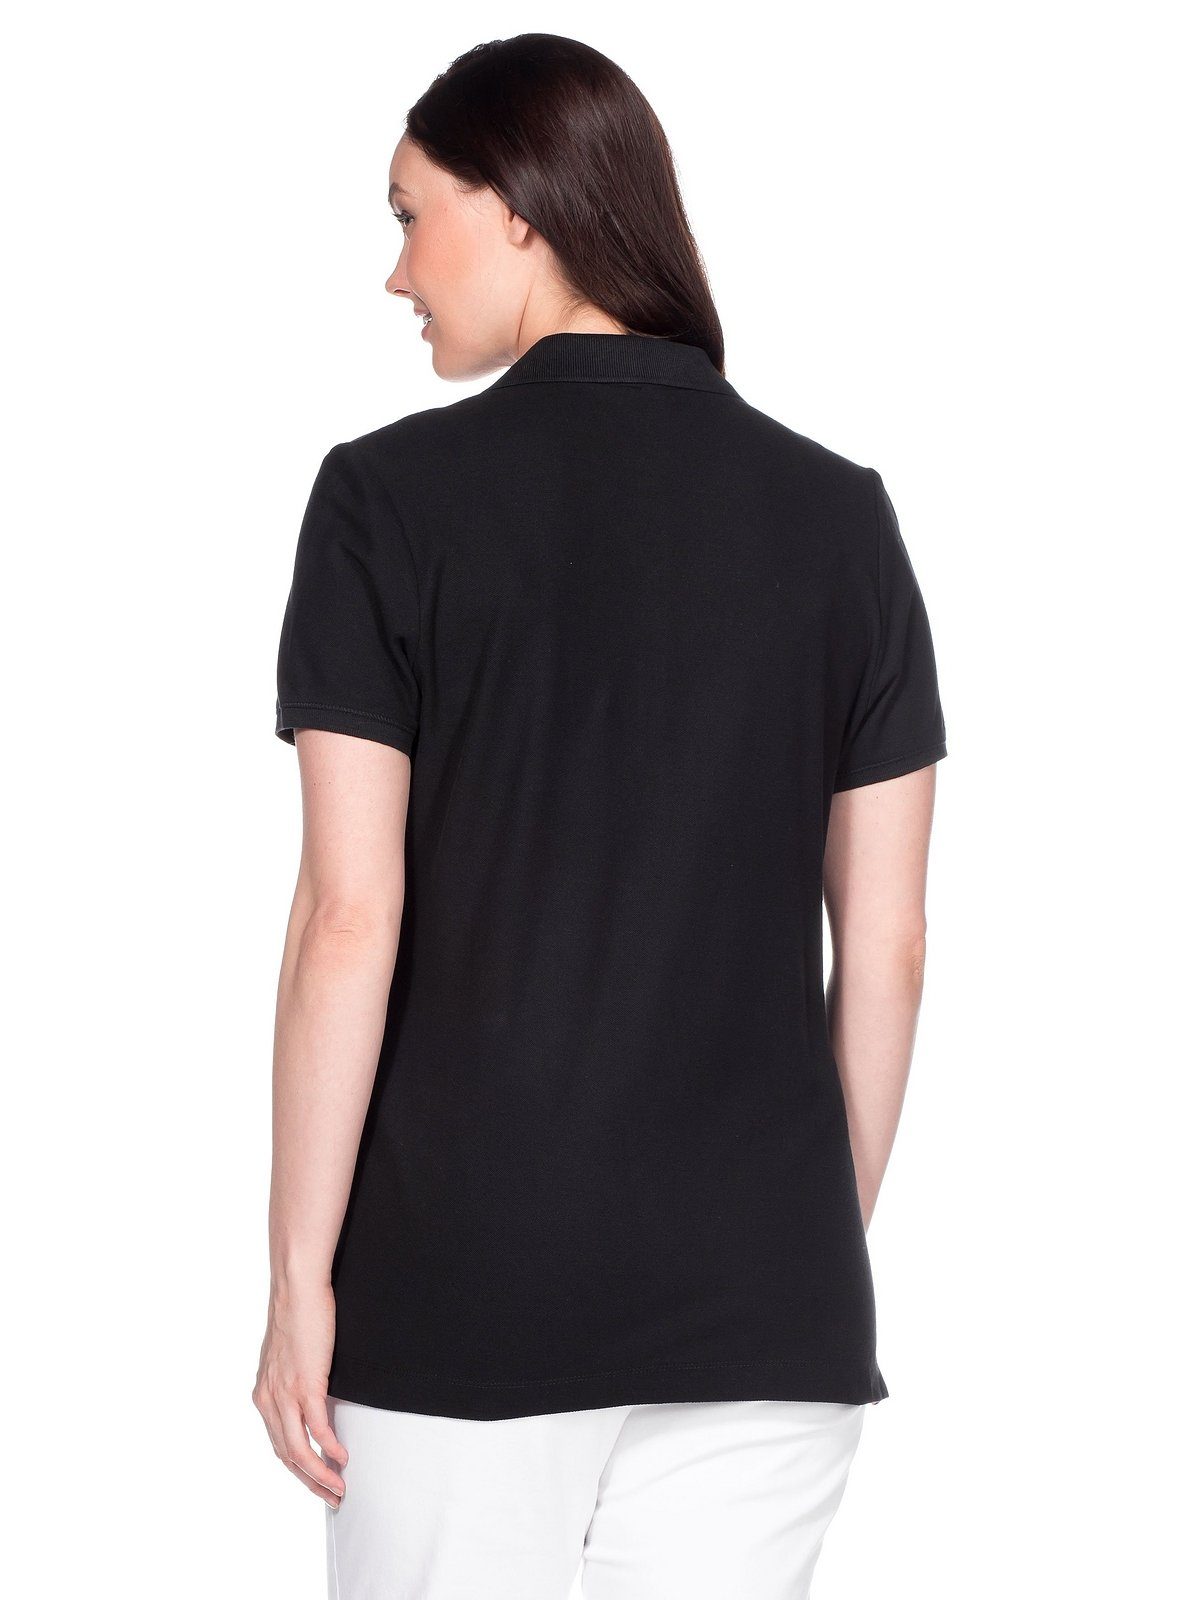 Größen Große Sheego T-Shirt schwarz